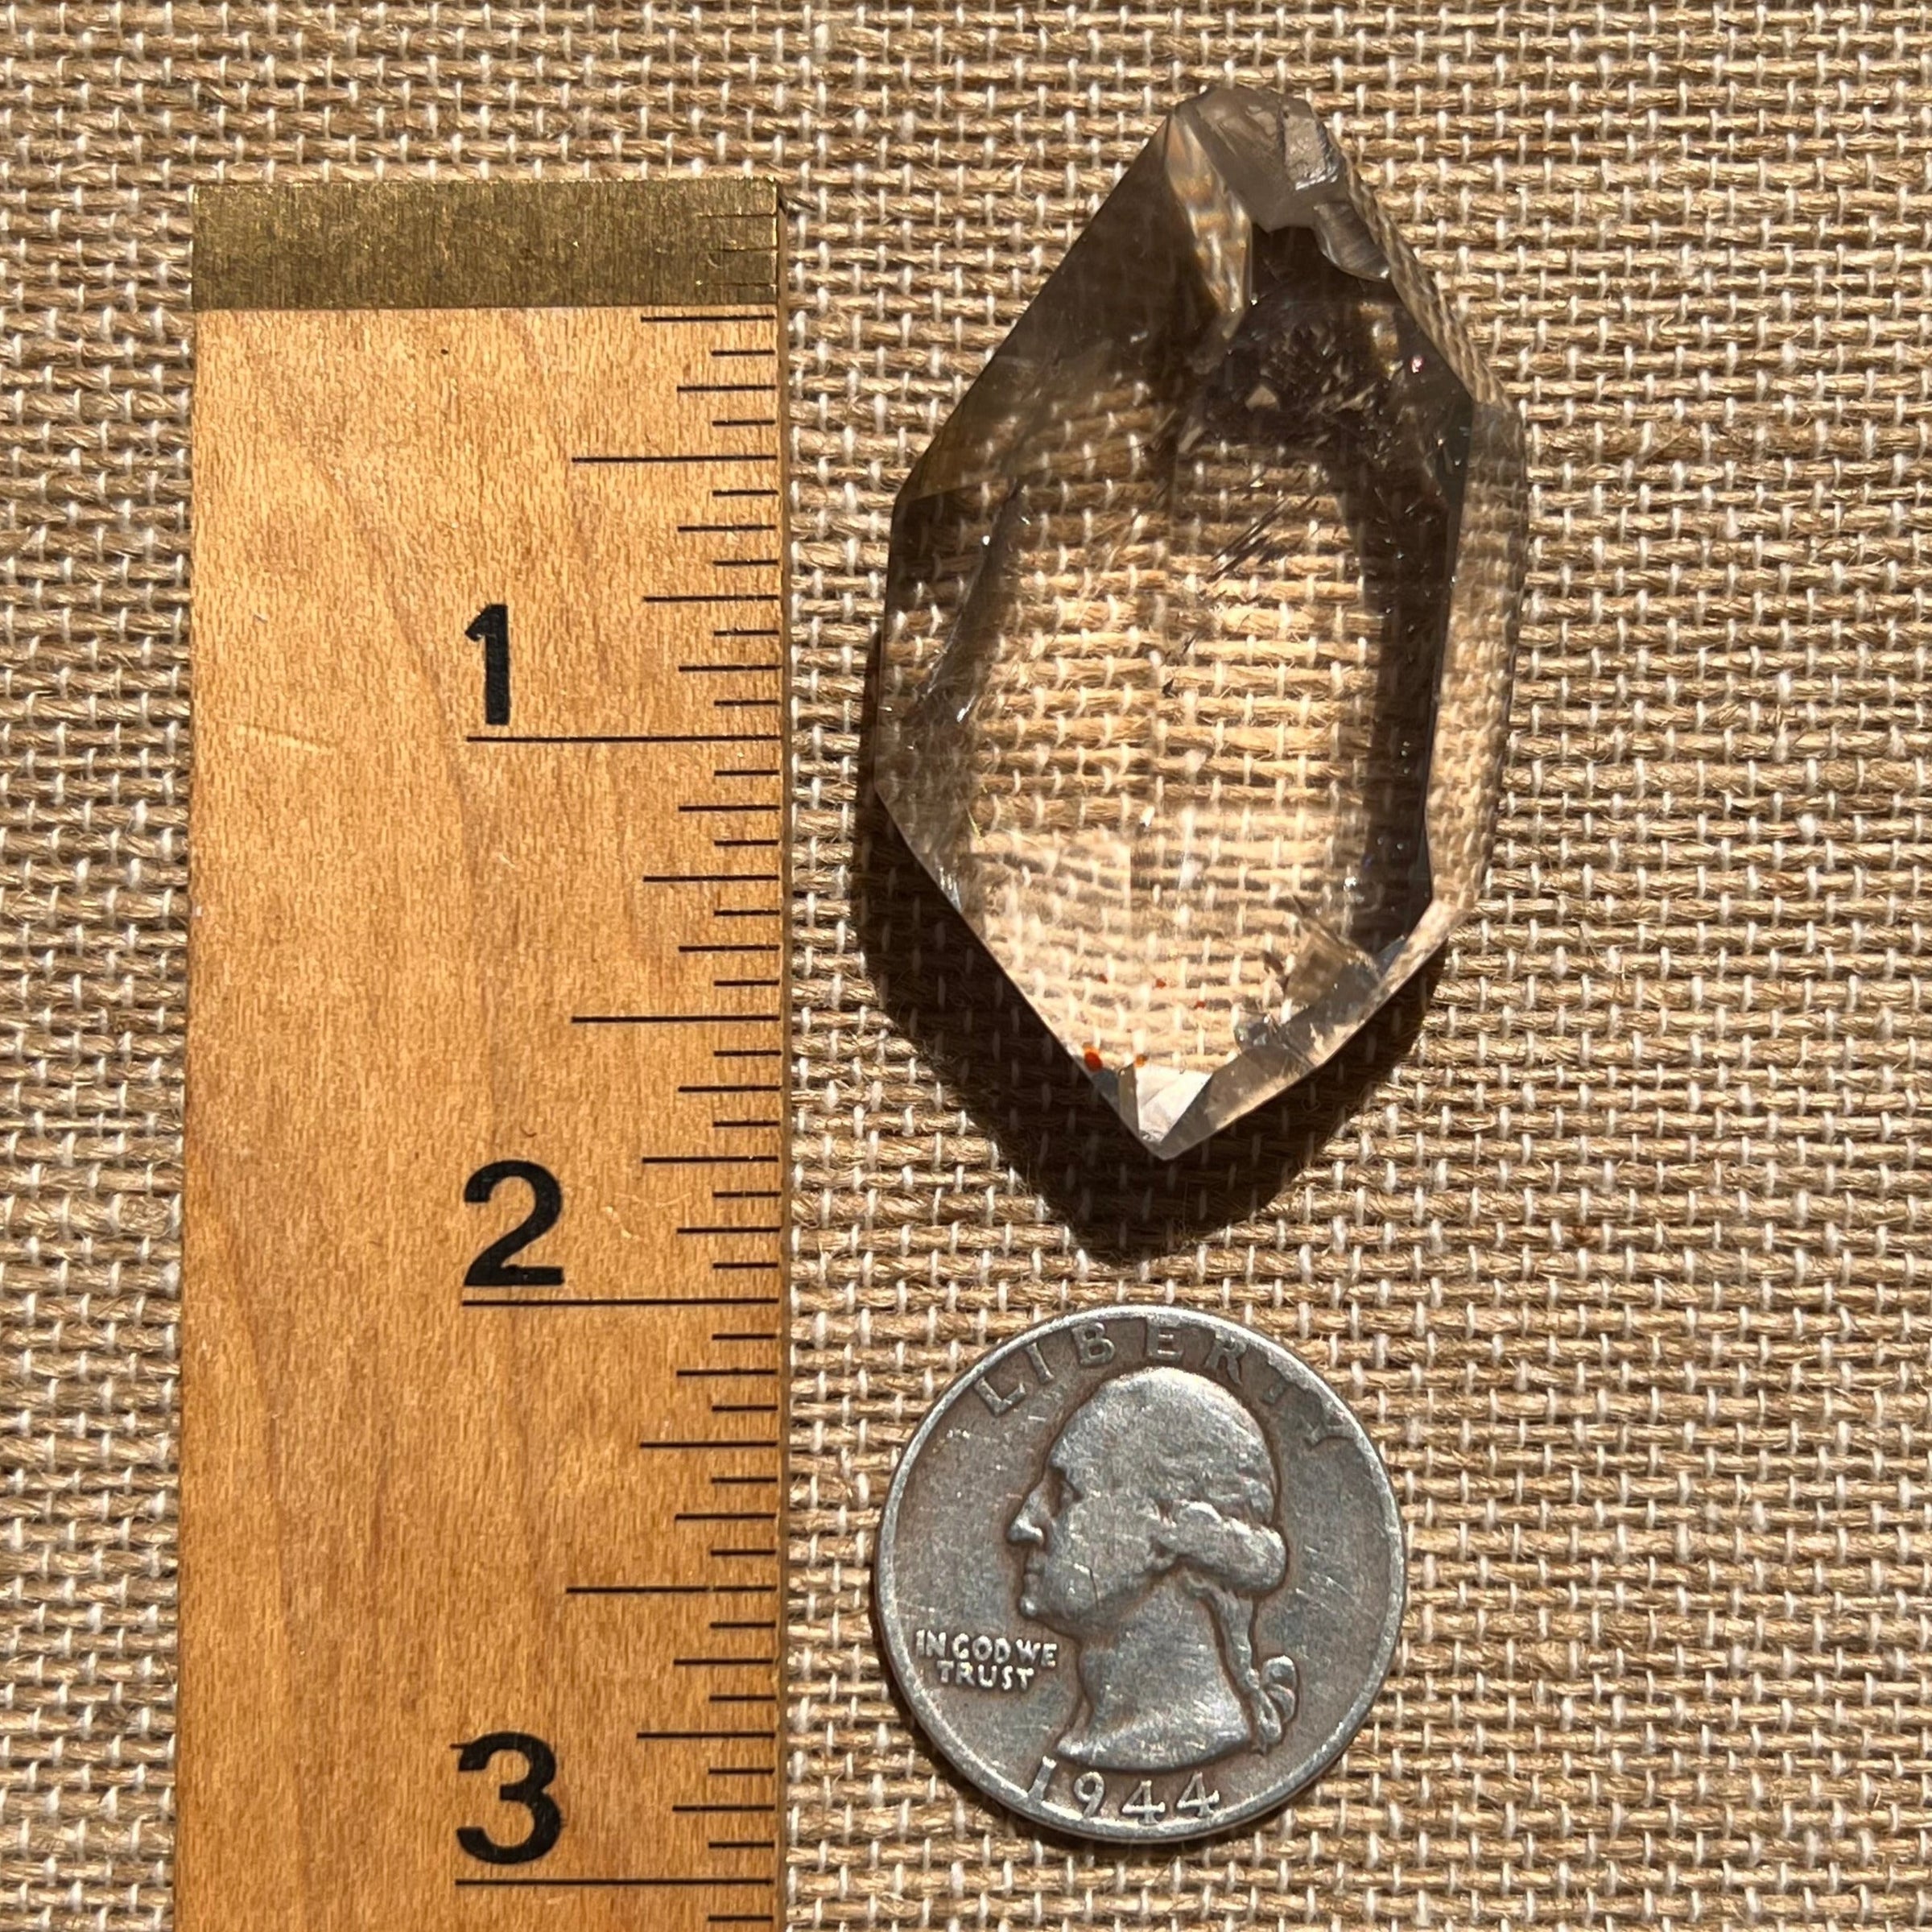 Brookite in Quartz Crystal #248-Moldavite Life